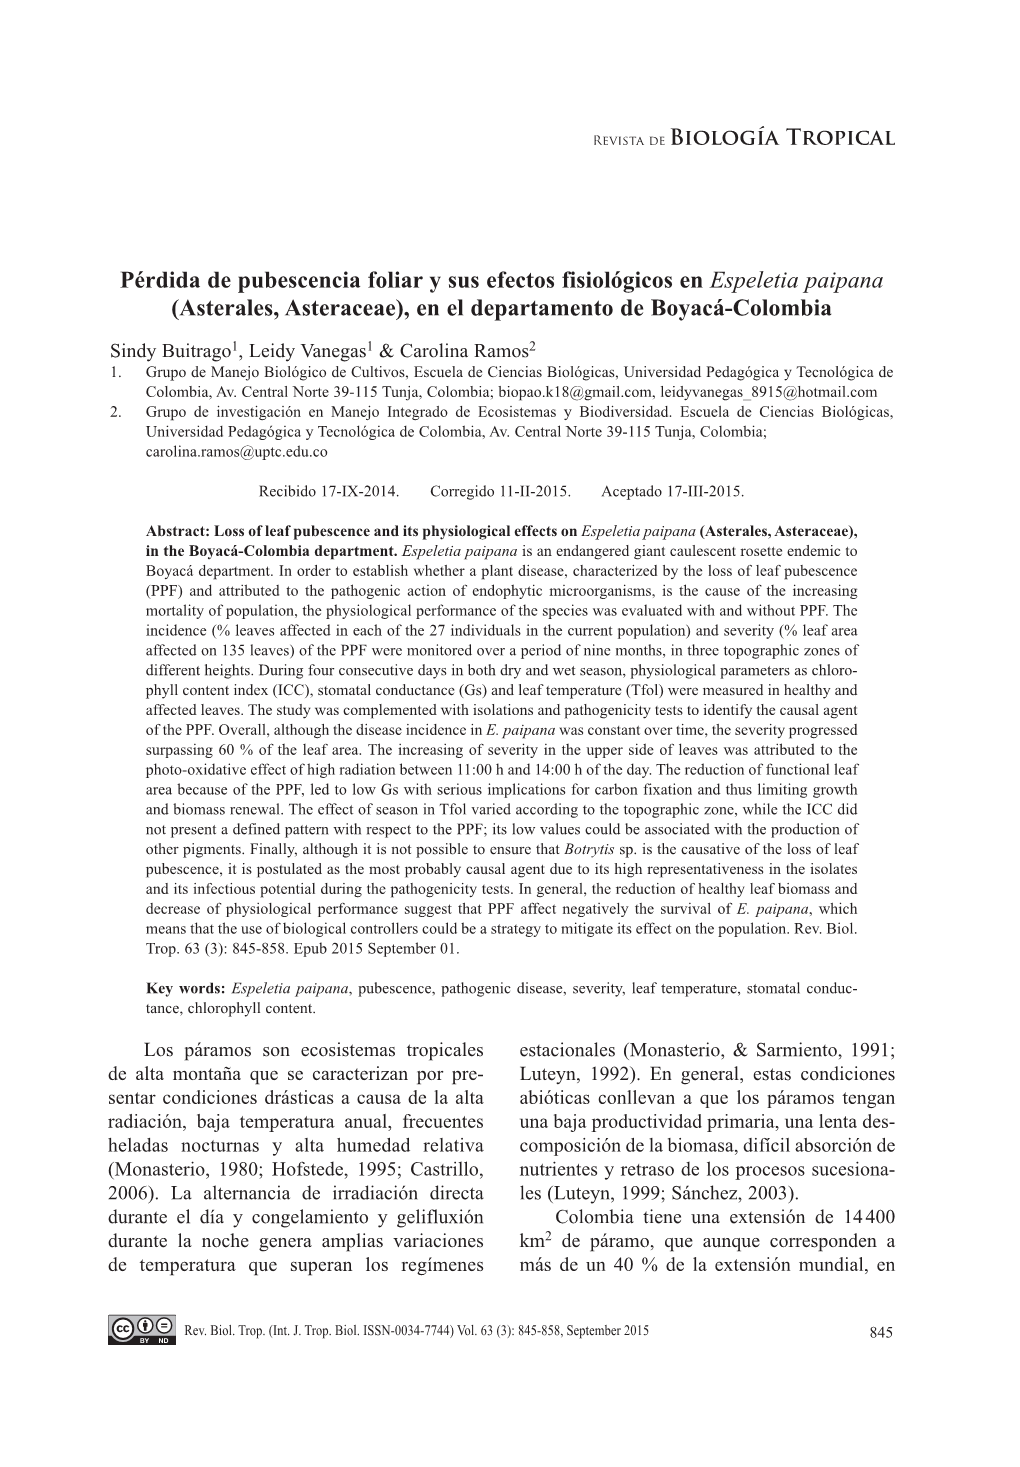 Pérdida De Pubescencia Foliar Y Sus Efectos Fisiológicos En Espeletia Paipana (Asterales, Asteraceae), En El Departamento De Boyacá-Colombia